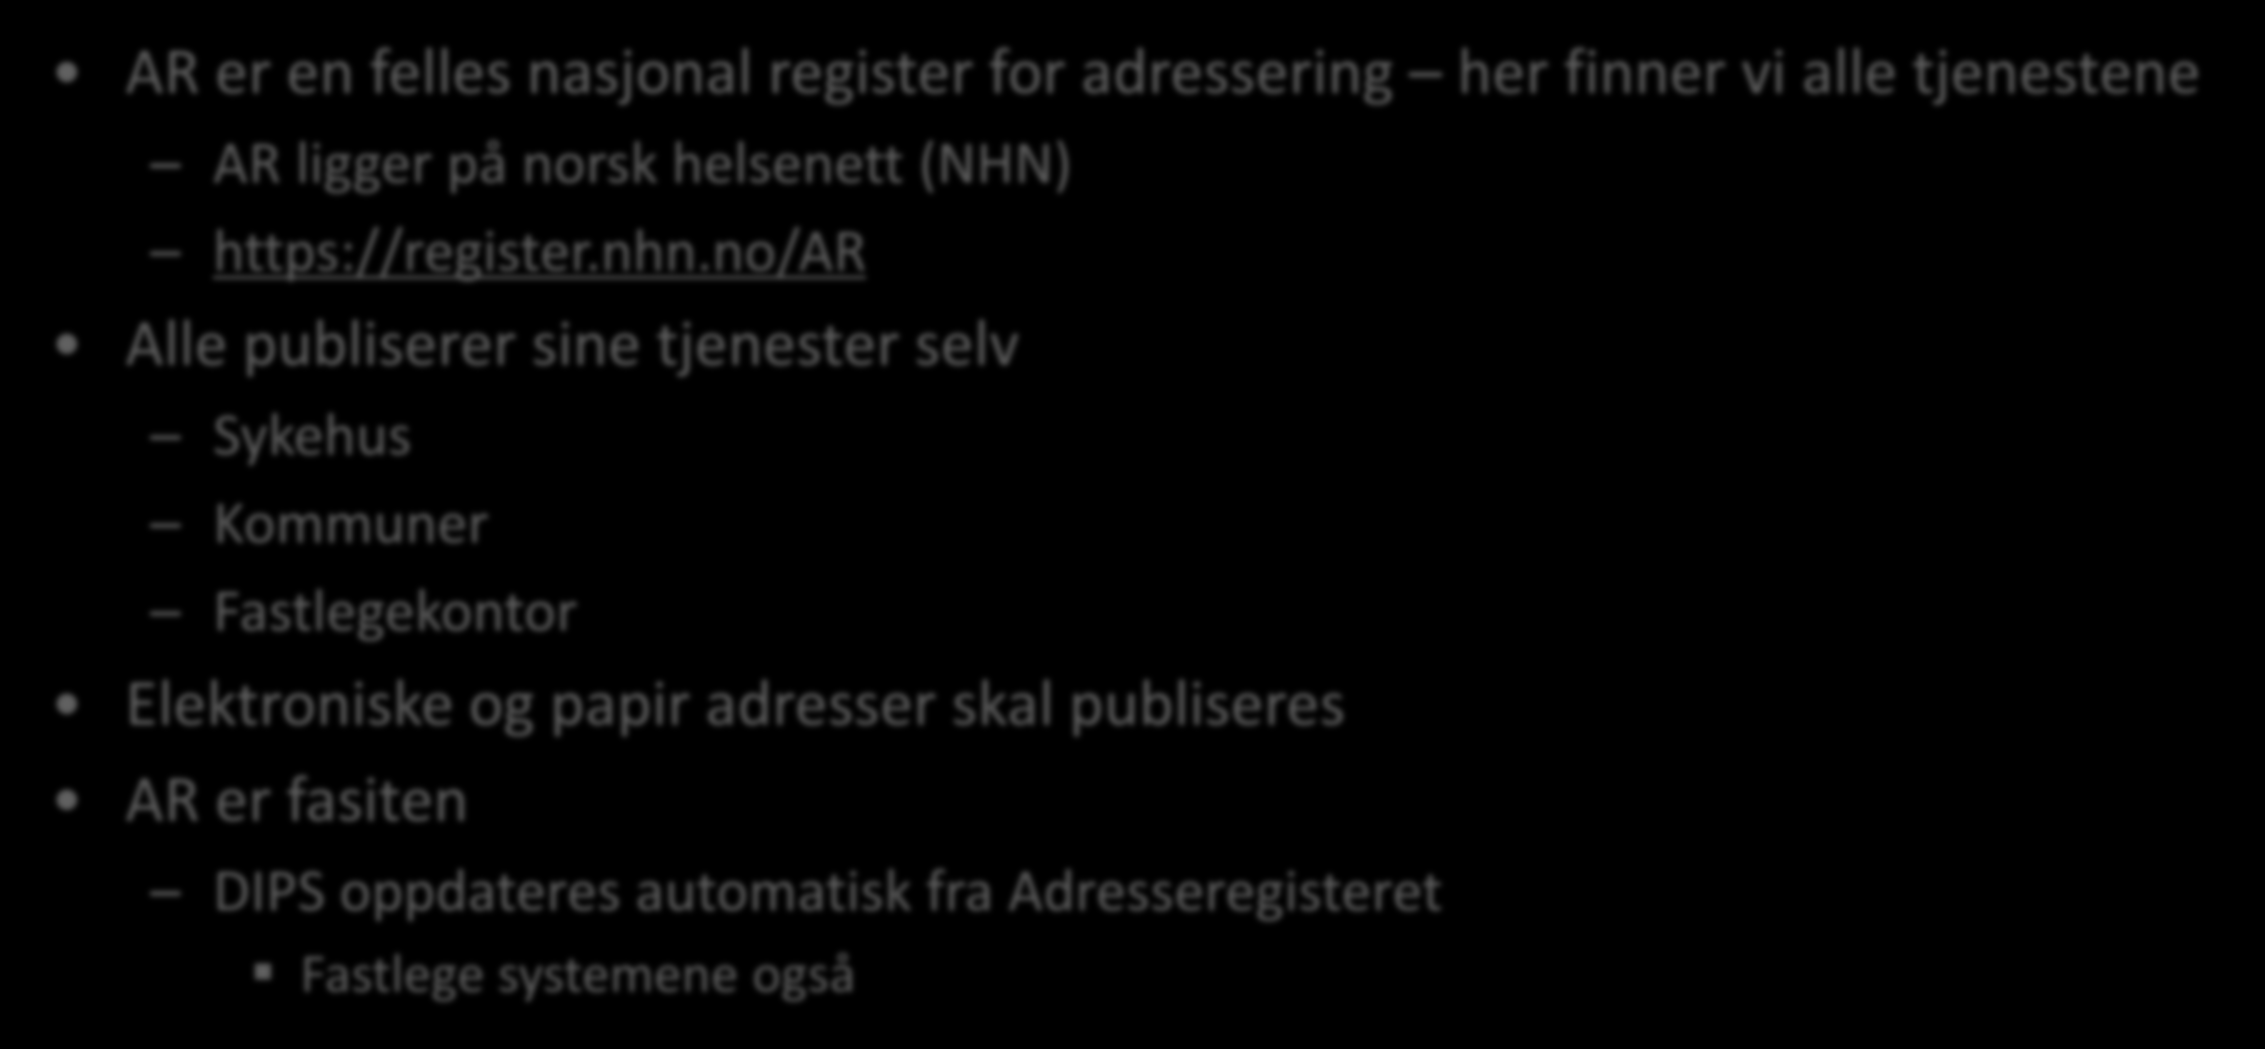 Hva er Adresseregisteret (AR)? AR er en felles nasjonal register for adressering her finner vi alle tjenestene AR ligger på norsk helsenett (NHN) https://register.nhn.